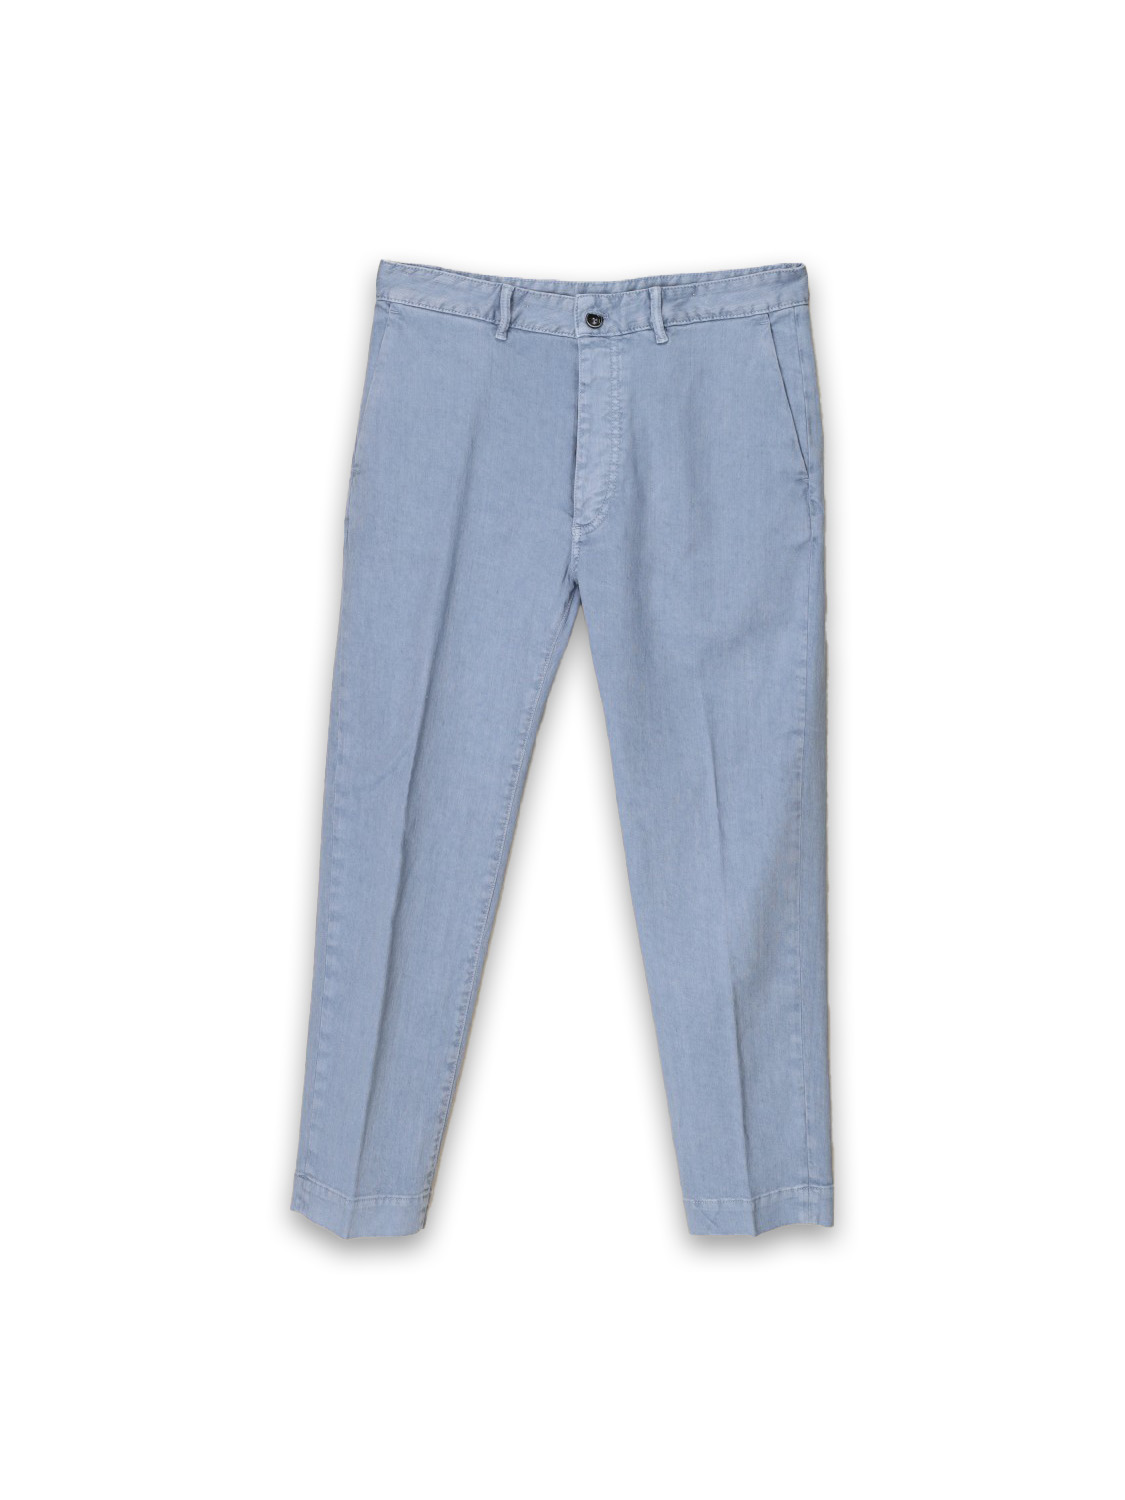 Tim - Jeans elasticizzati in misto lino e cotone  